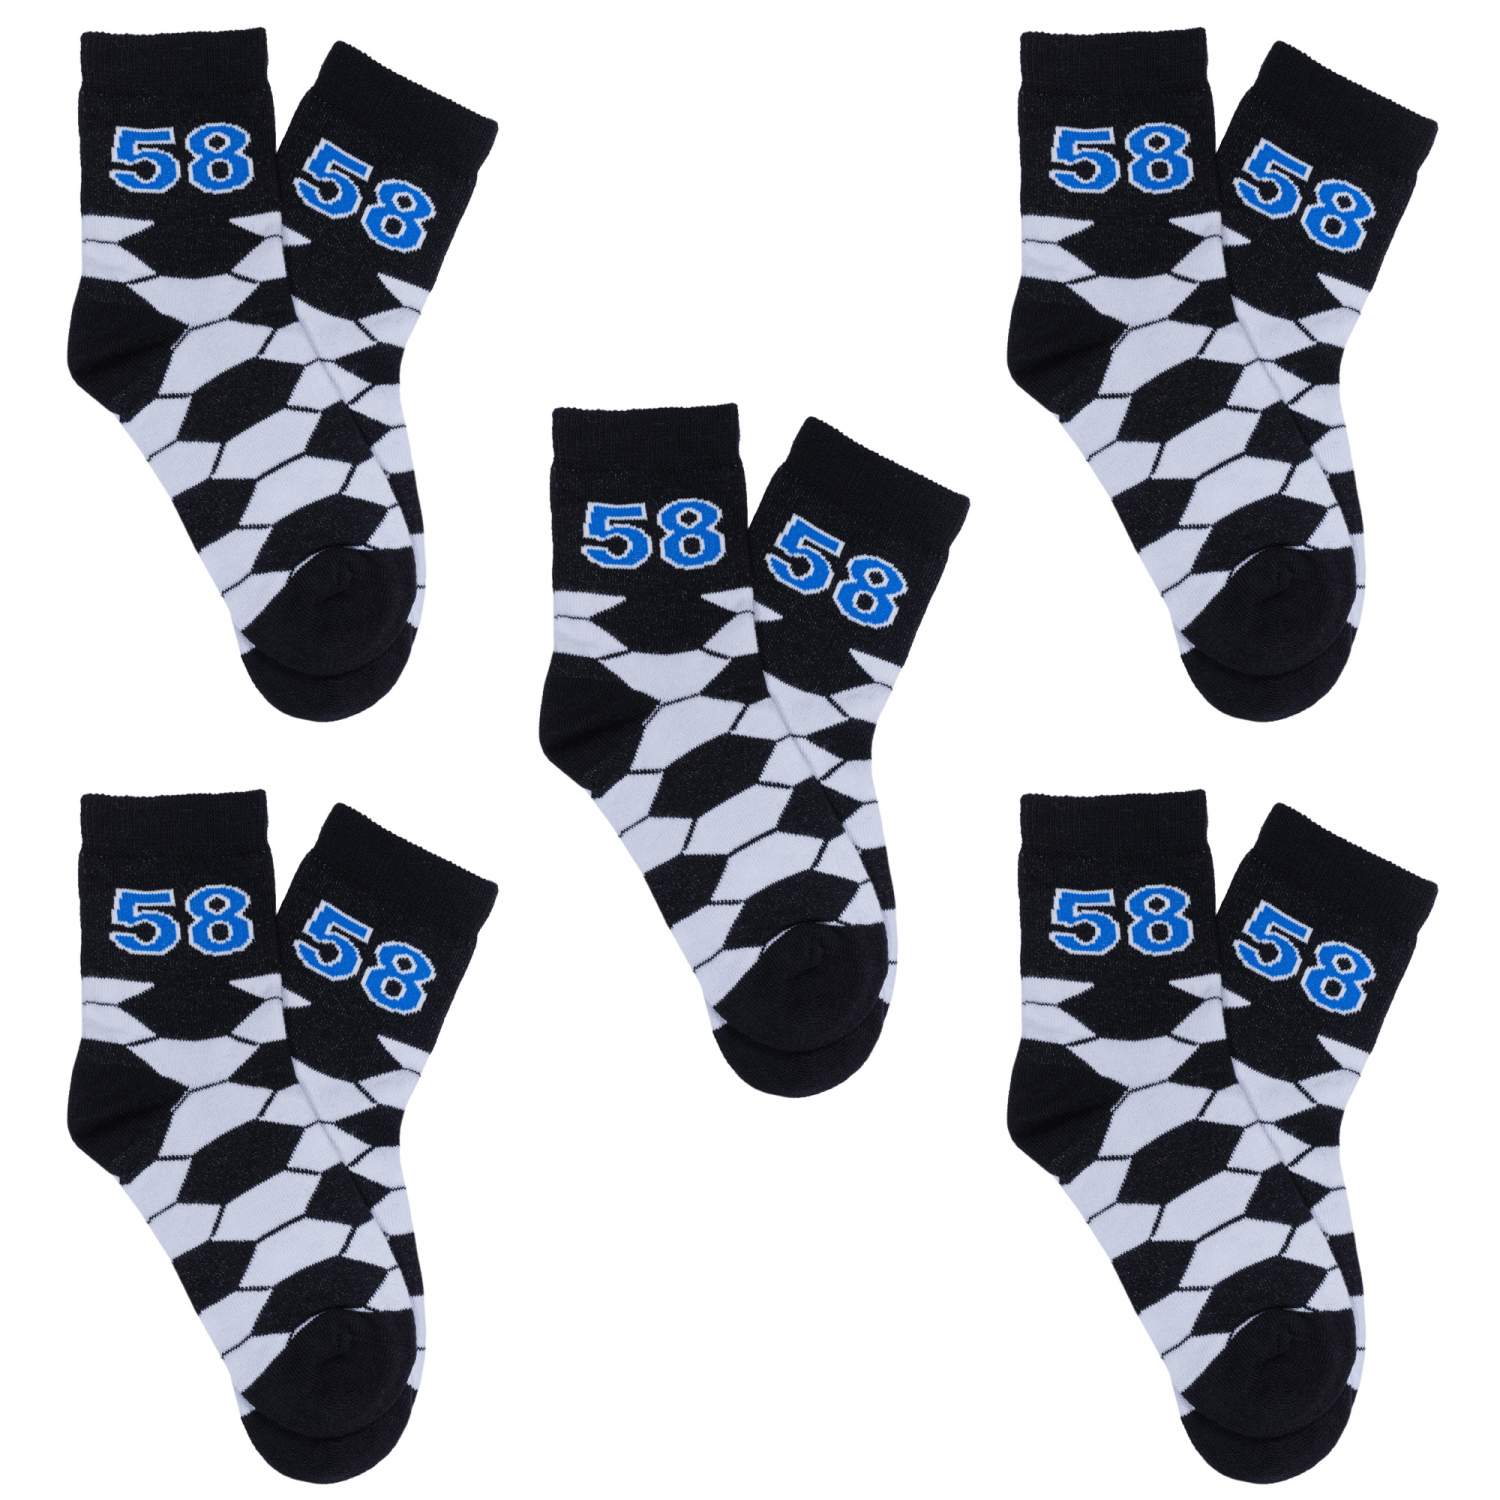 Купить носки для мальчиков Rusocks 5-Д-86 цв. черный; белый; синий р. 26-28, цены на Мегамаркет | Артикул: 600008520895